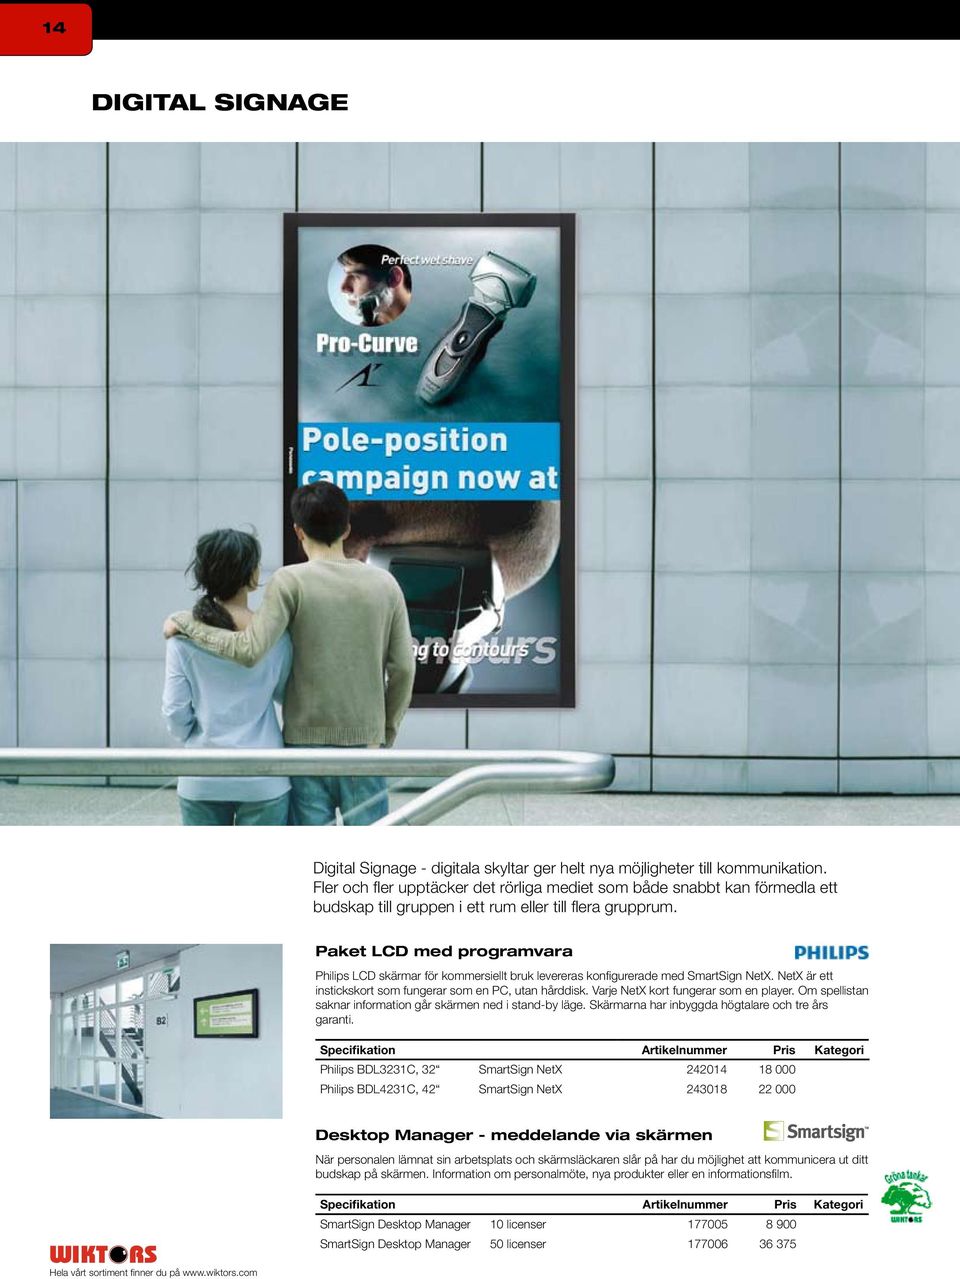 Paket LCD med programvara Philips LCD skärmar för kommersiellt bruk levereras konfigurerade med SmartSign NetX. NetX är ett instickskort som fungerar som en PC, utan hårddisk.